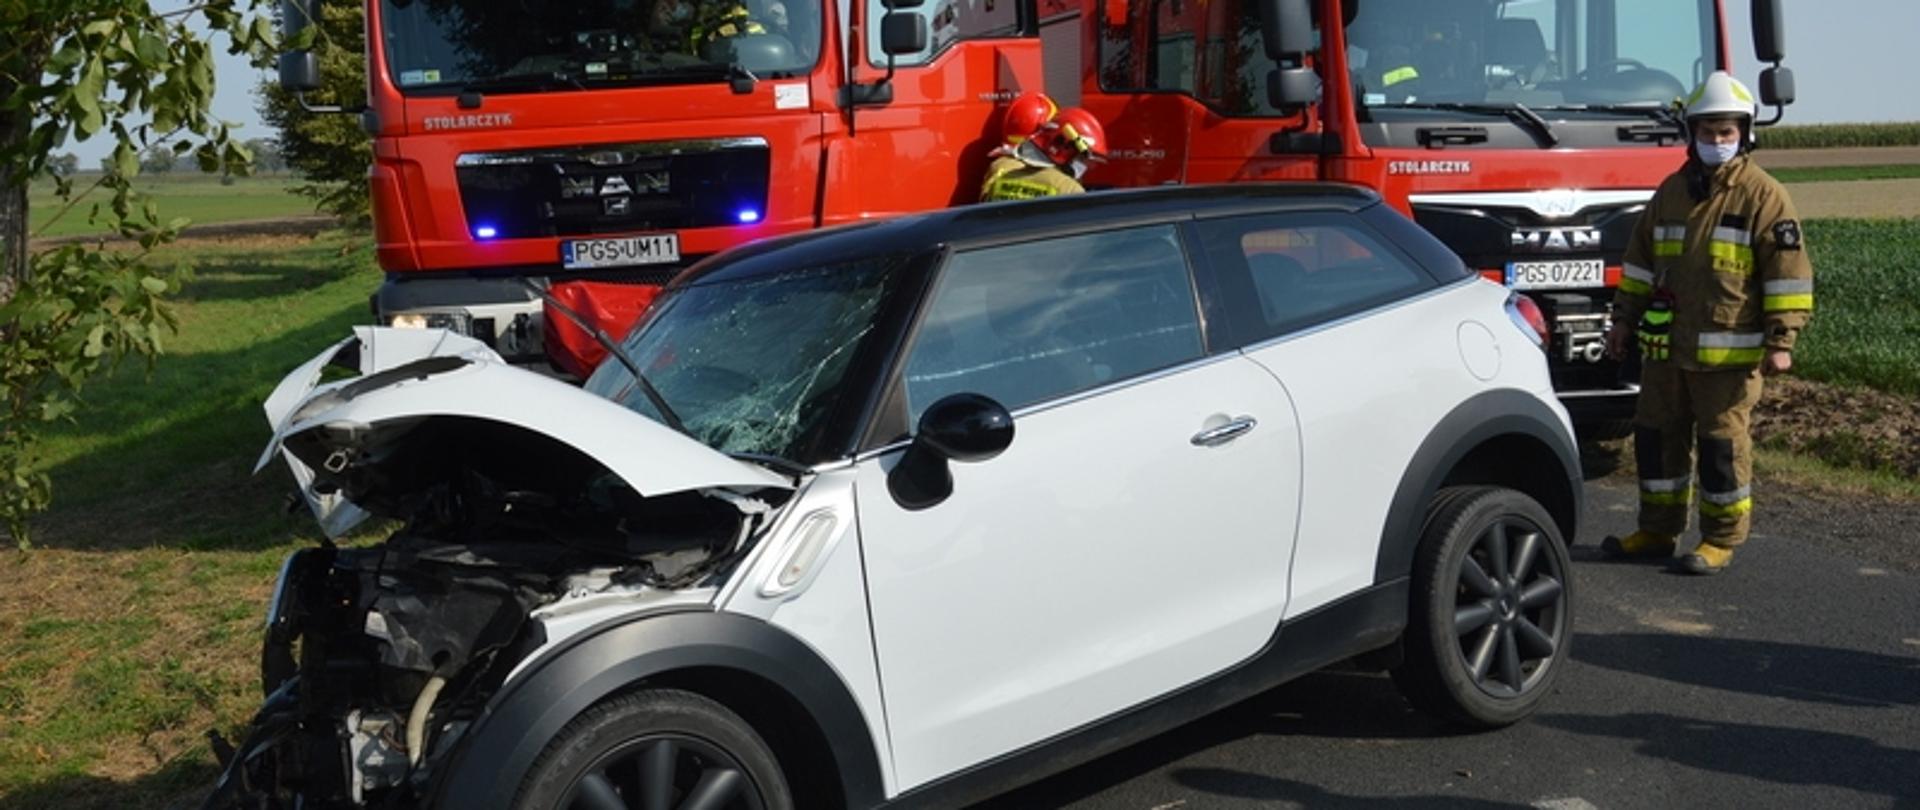 Na zdjęciu znajduje się uszkodzony samochód osobowy po uderzeniu w drzewo oraz dwa samochody pożarnicze.